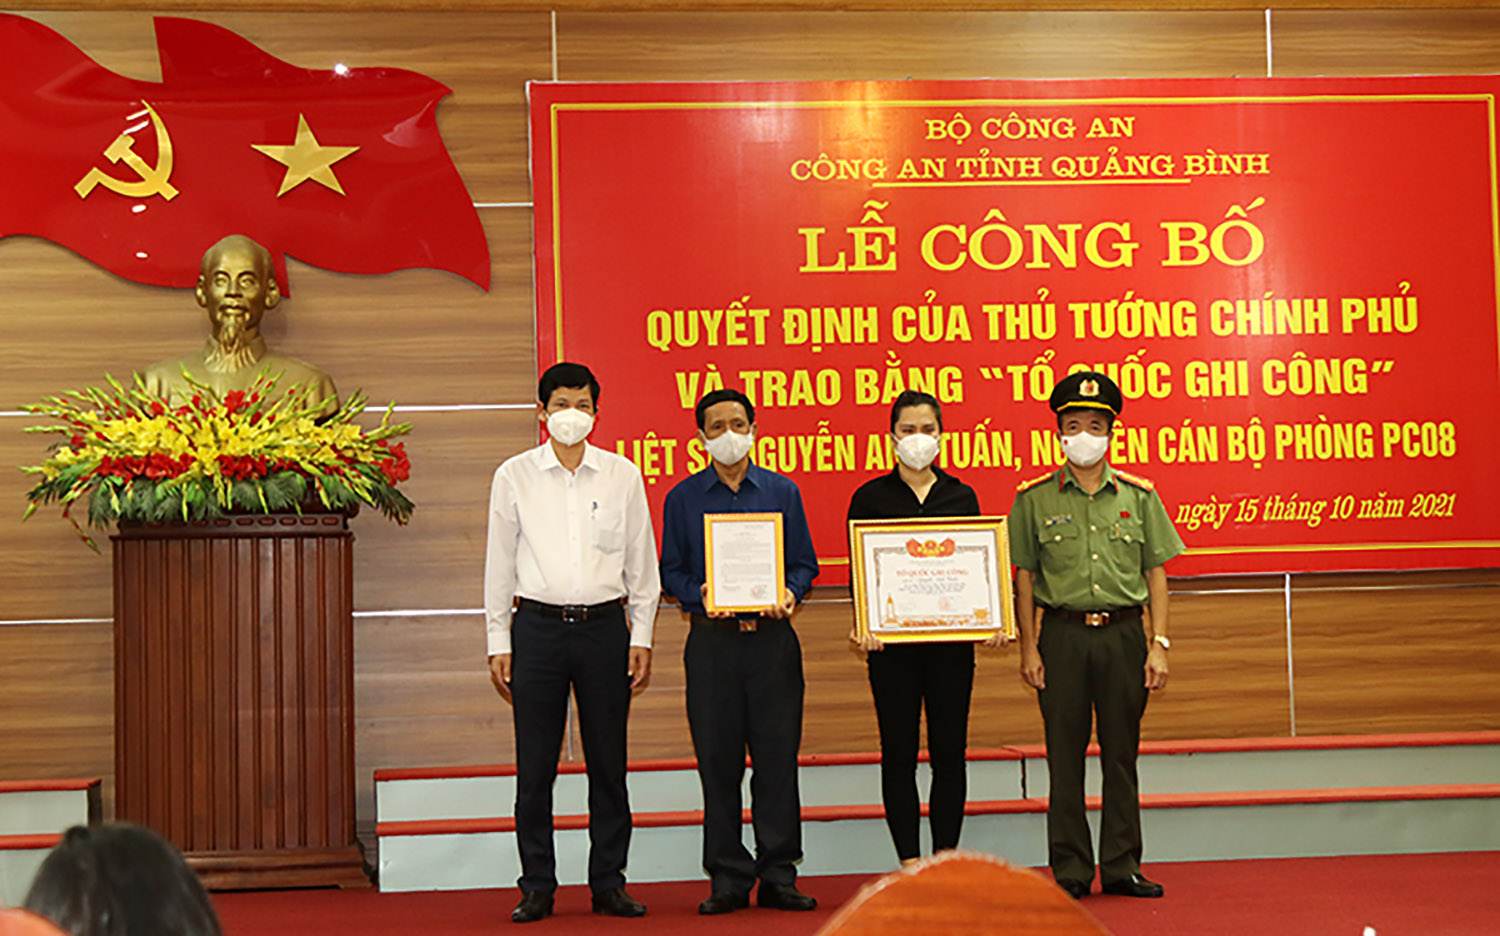 Trao bằng "Tổ quốc ghi công" cho gia đình liệt sỹ Nguyễn Anh Tuấn